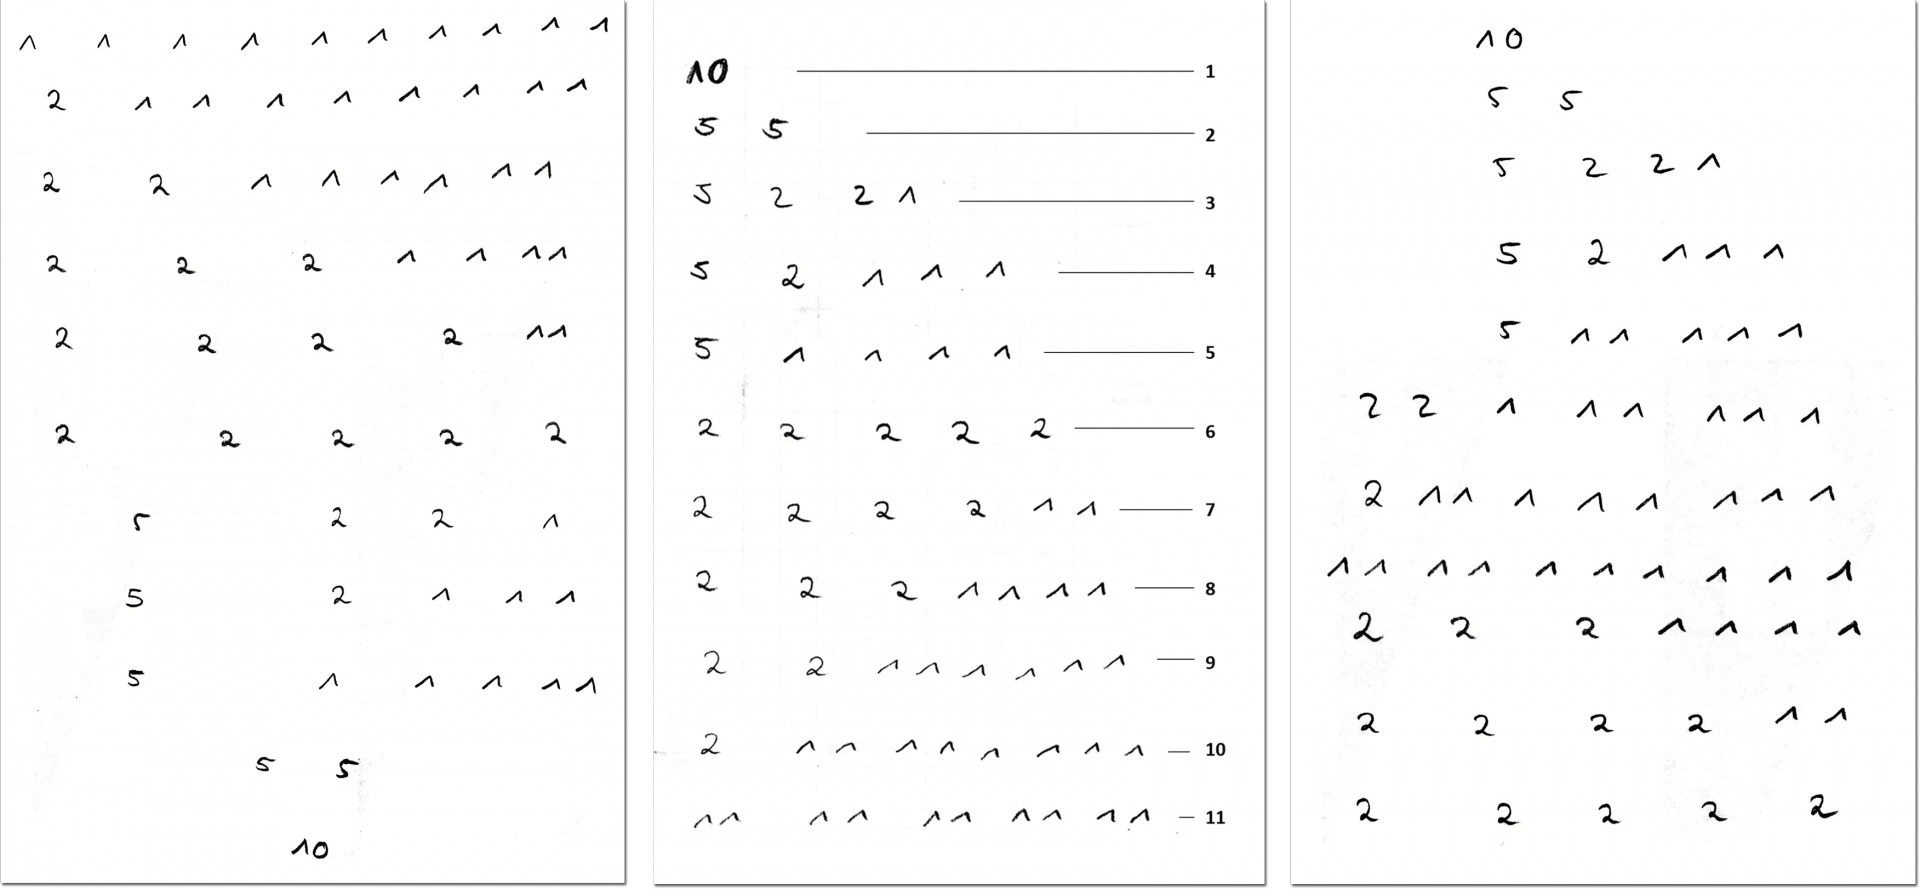 3 Lösungen zur Aufgabe aus Abbildung 4: In unterschiedlicher Reihenfolge wurden verschiedene Zerlegungen der 10 untereinander aufgeschrieben: 1, 1, 1, 1, 1, 1, 1, 1, 1 und 1; 2, 1, 1, 1, 1, 1, 1, 1 und 1; 2, 2, 1, 1, 1, 1, 1 und 1; 2, 2, 2, 1, 1, 1 und 1; 2, 2, 2, 2, 1 und 1; 2, 2, 2, 2 und 2; 5, 2, 2 und 1; 5, 2, 1, 1, und 1; 5, 1, 1, 1, 1 und 1; 5 und 5; 10. 